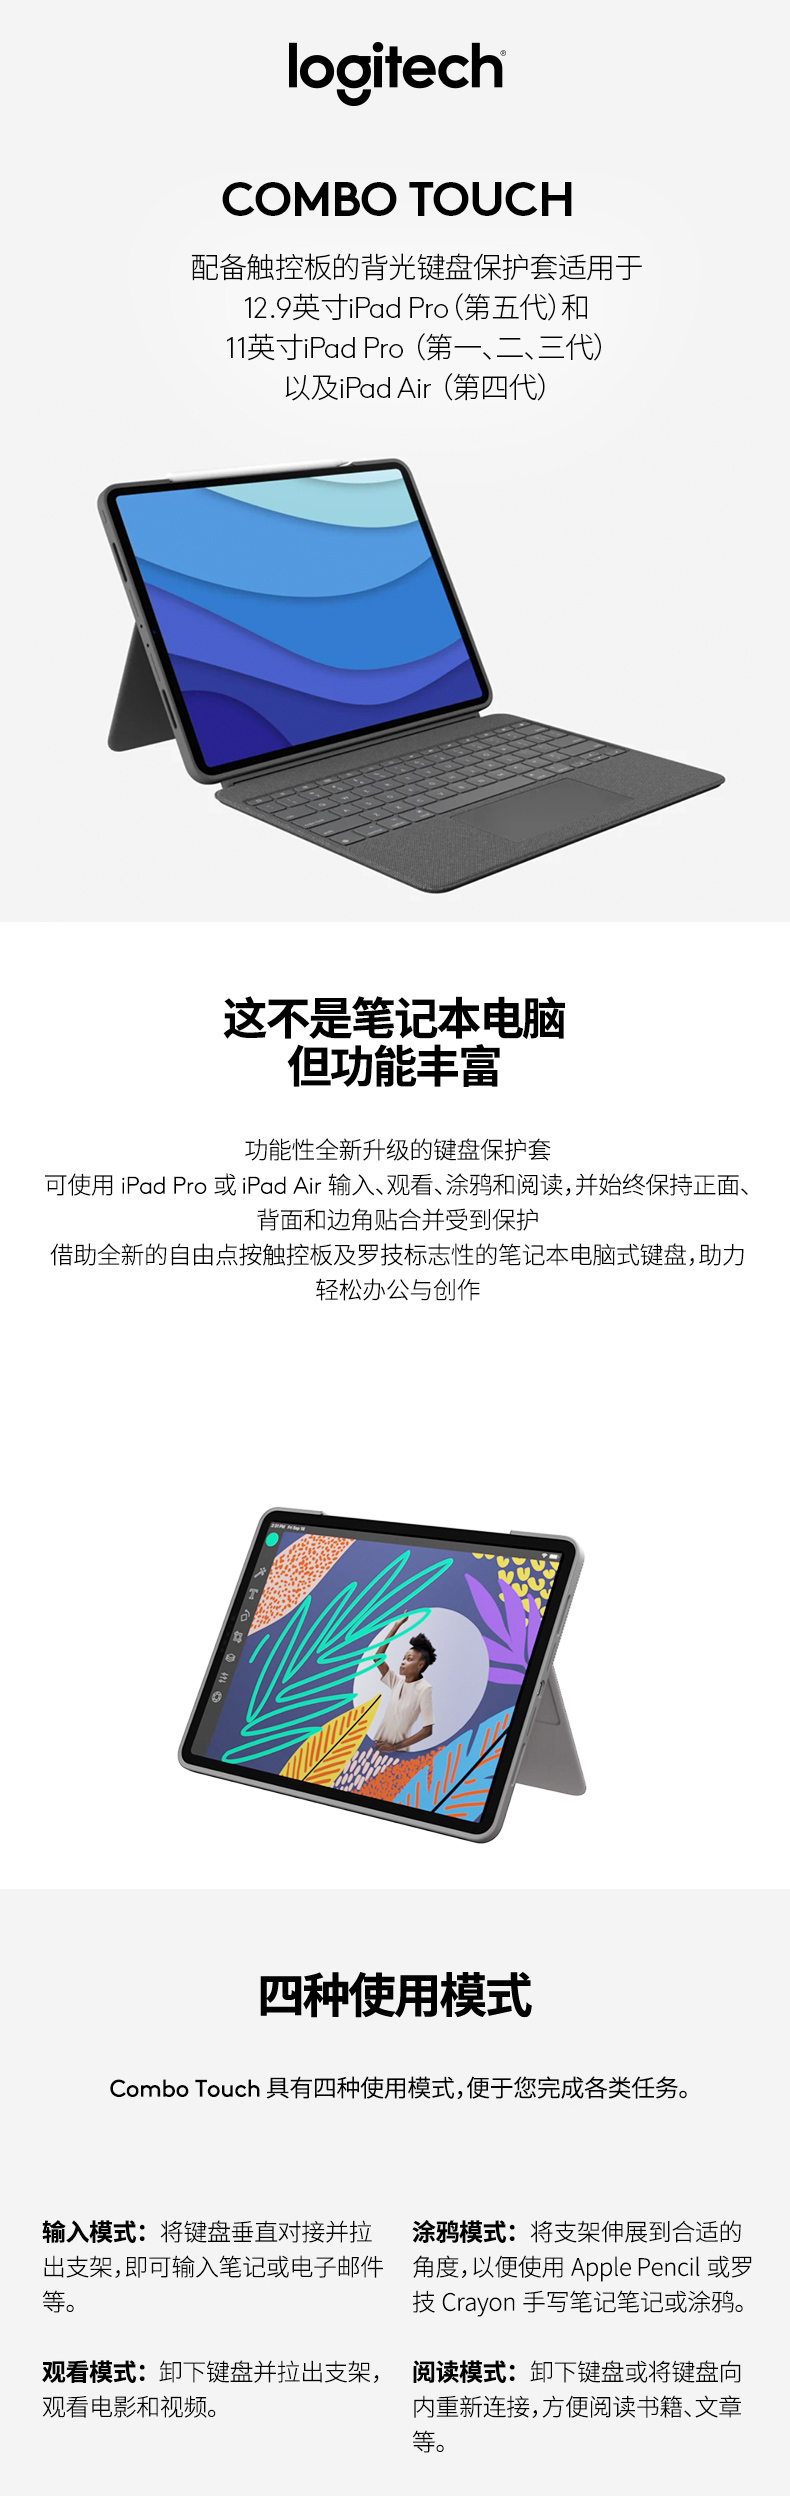 クーポン正規品 Logicool Air用 iPad IK1095 Touch Combo タブレット